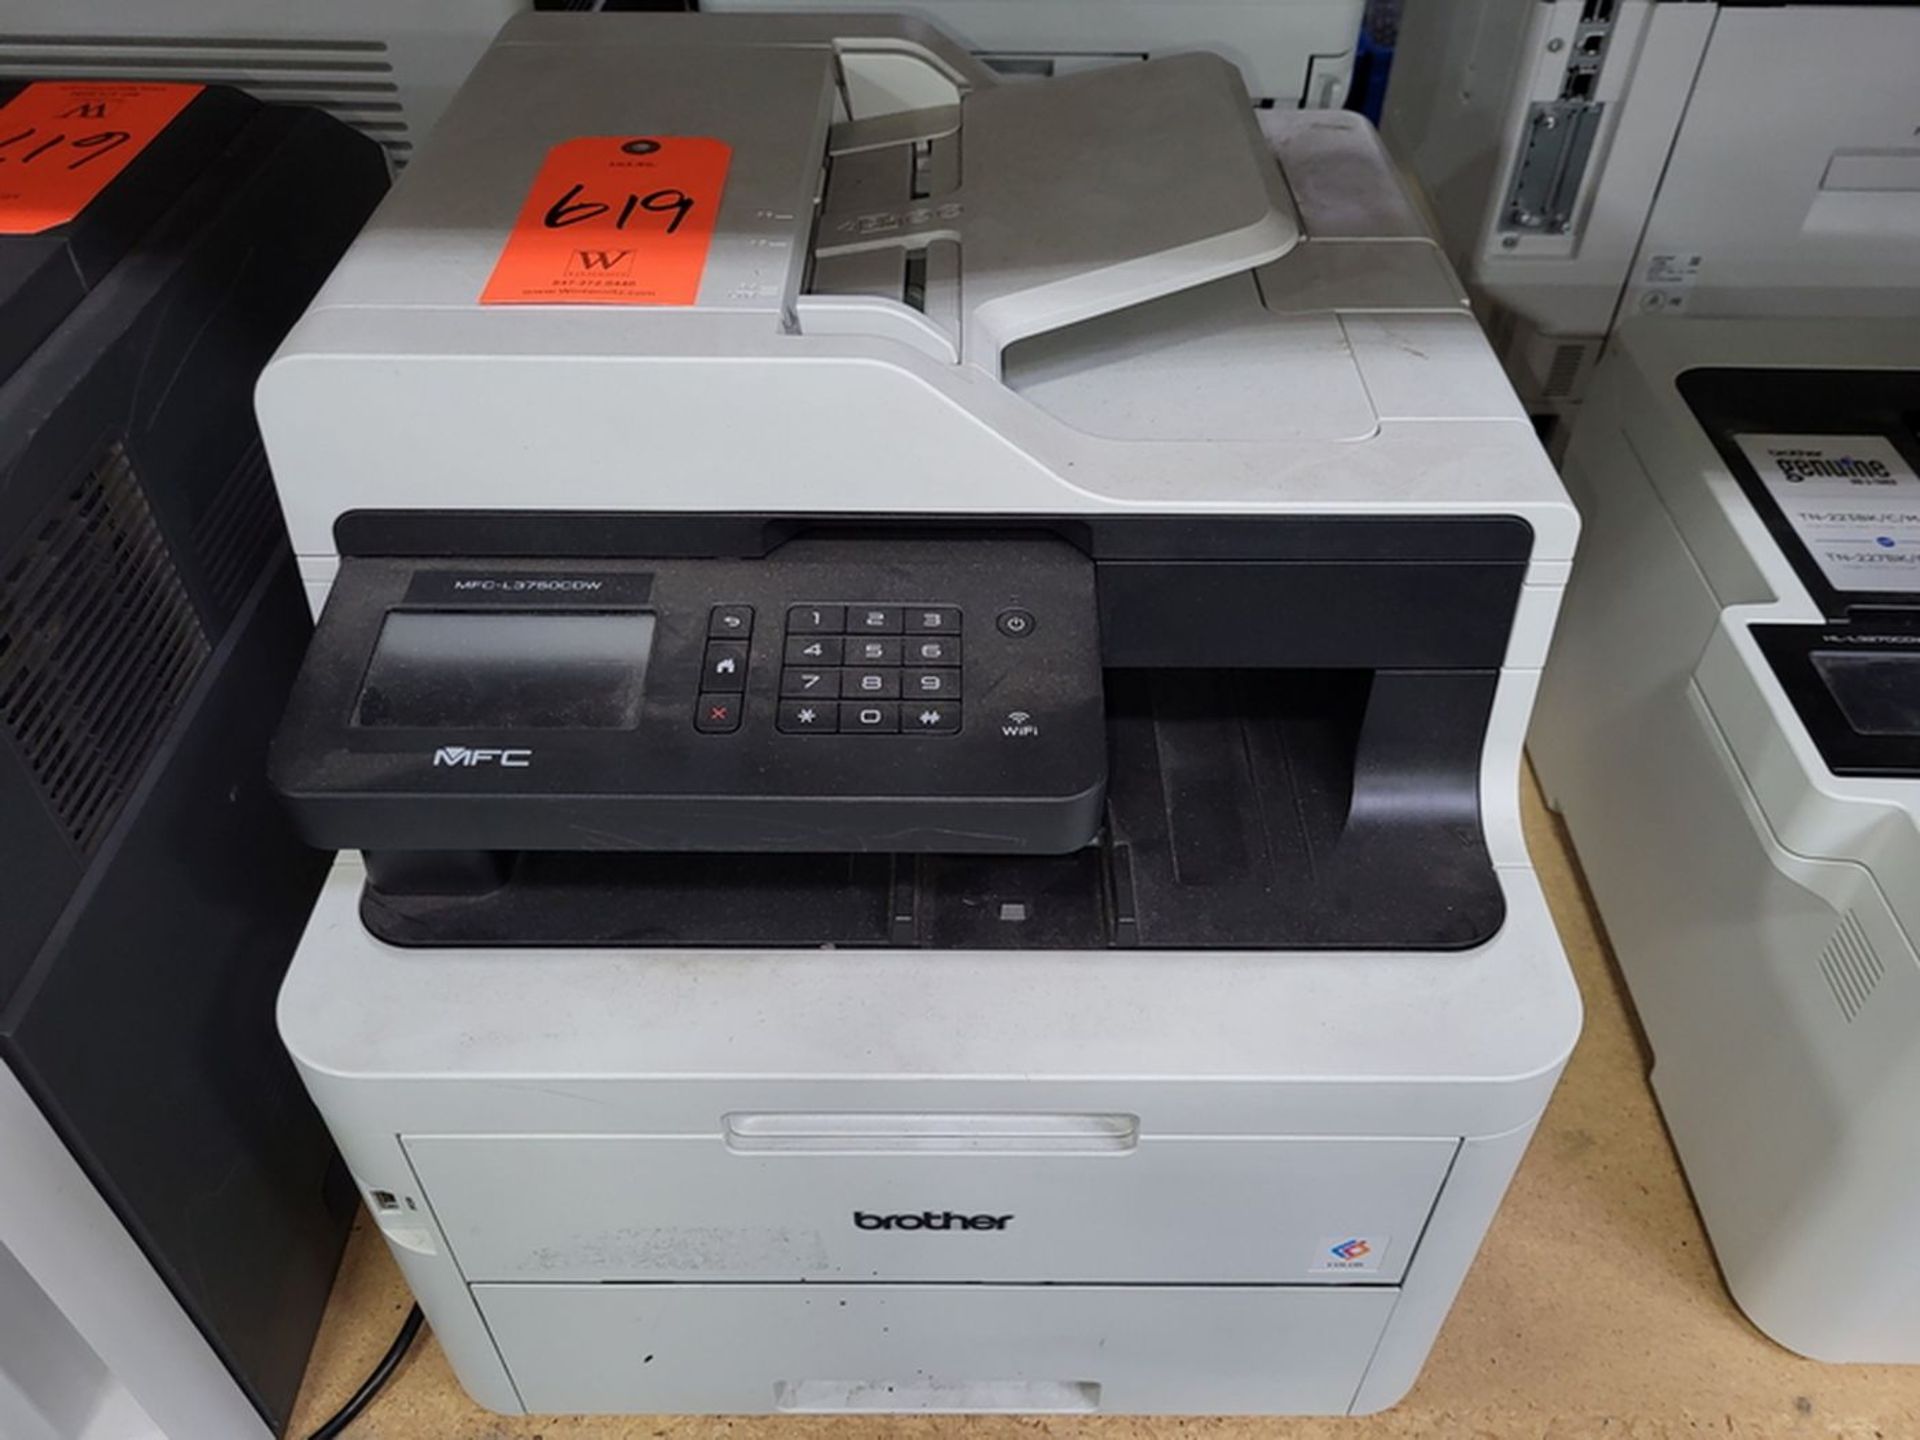 Brother MFC-L3750CDW Color Laser Printer;